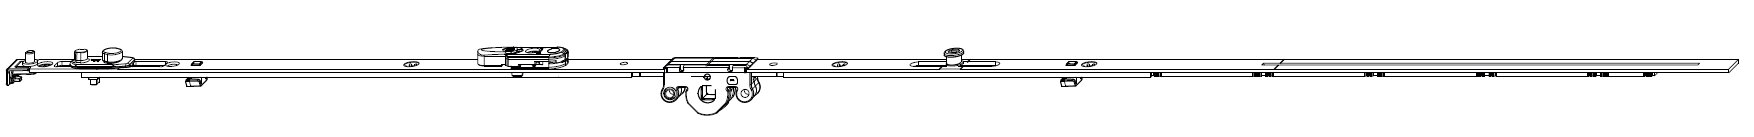 MAICO -  Cremonese MULTI-MATIC anta ribalta antieffrazione altezza maniglia fissa con piedino e dss per ribalta e bilanciere - gr / dim. 1950 - entrata 15 - alt. man. 1050 - lbb/hbb 1701 - 1950